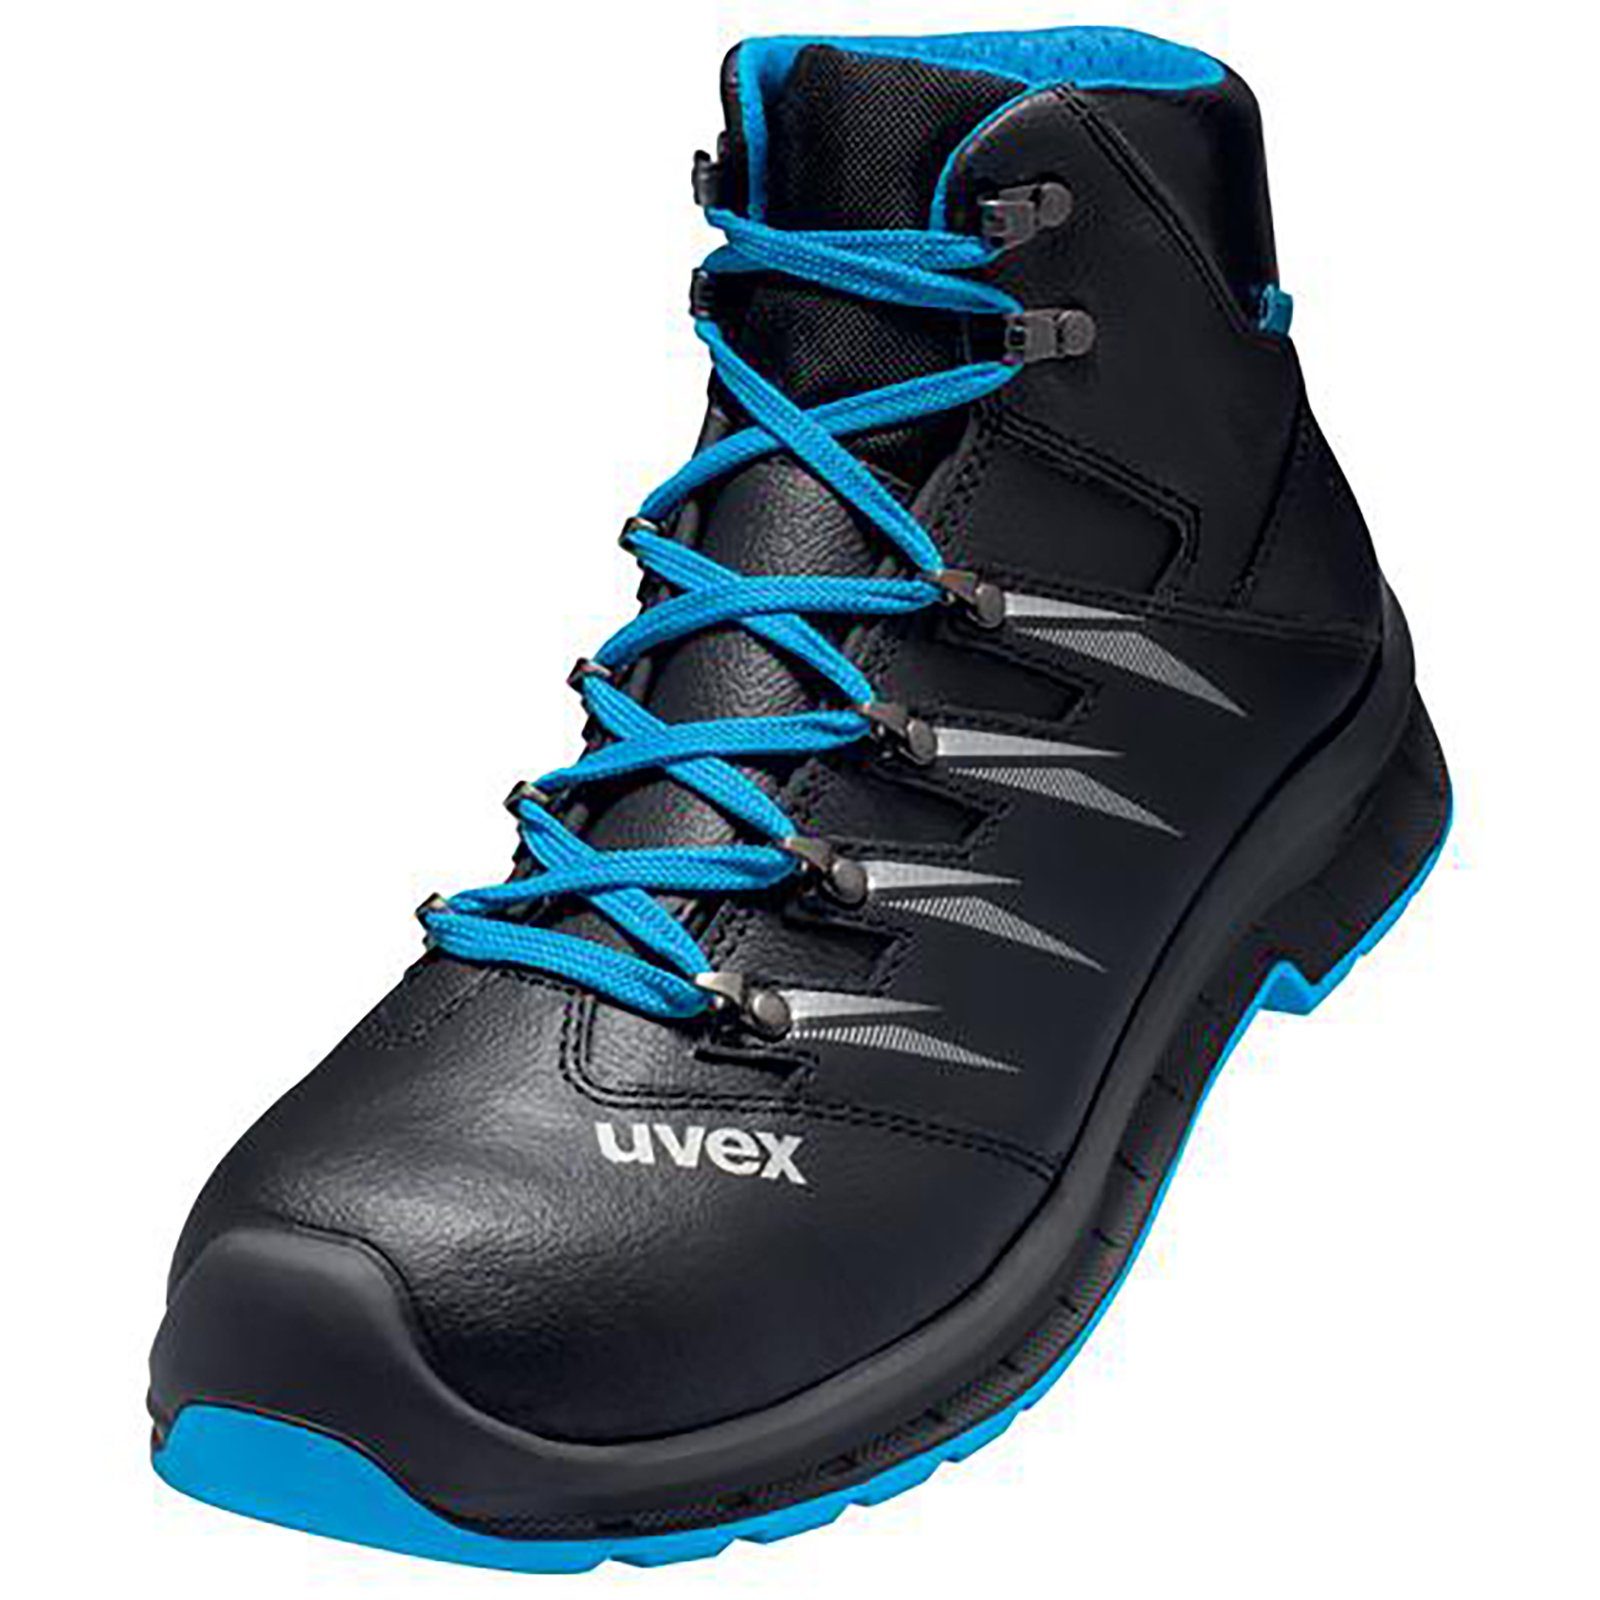 Uvex 2 trend Stiefel S3 Sicherheitsstiefel Weite blau, schwarz 11